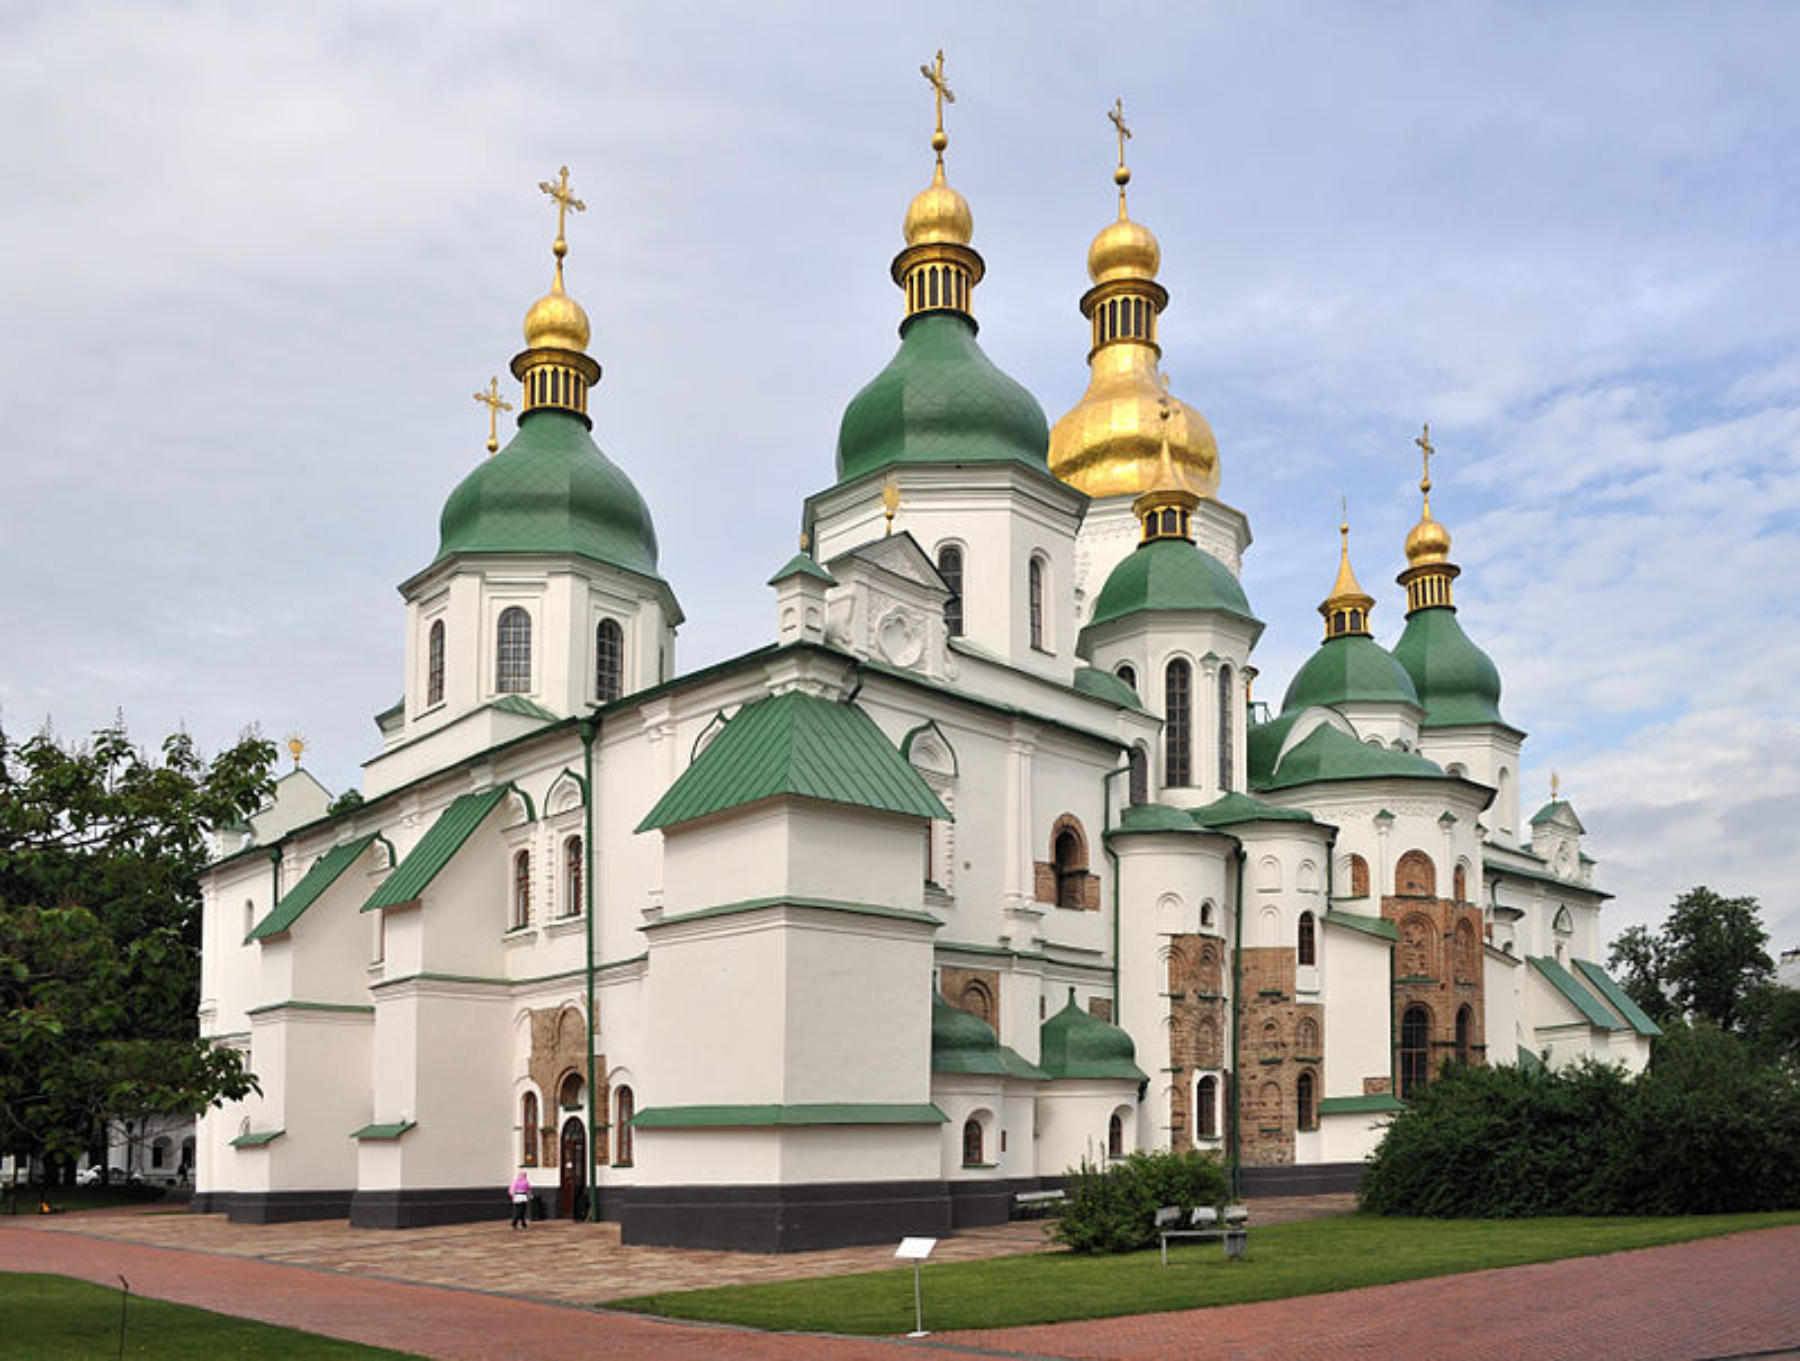 Podczas działań wojennych zniszczeniom uległ kijowski sobór św. Sofii wraz z zespołem budynków klasztornych Ławrą Peczerską.